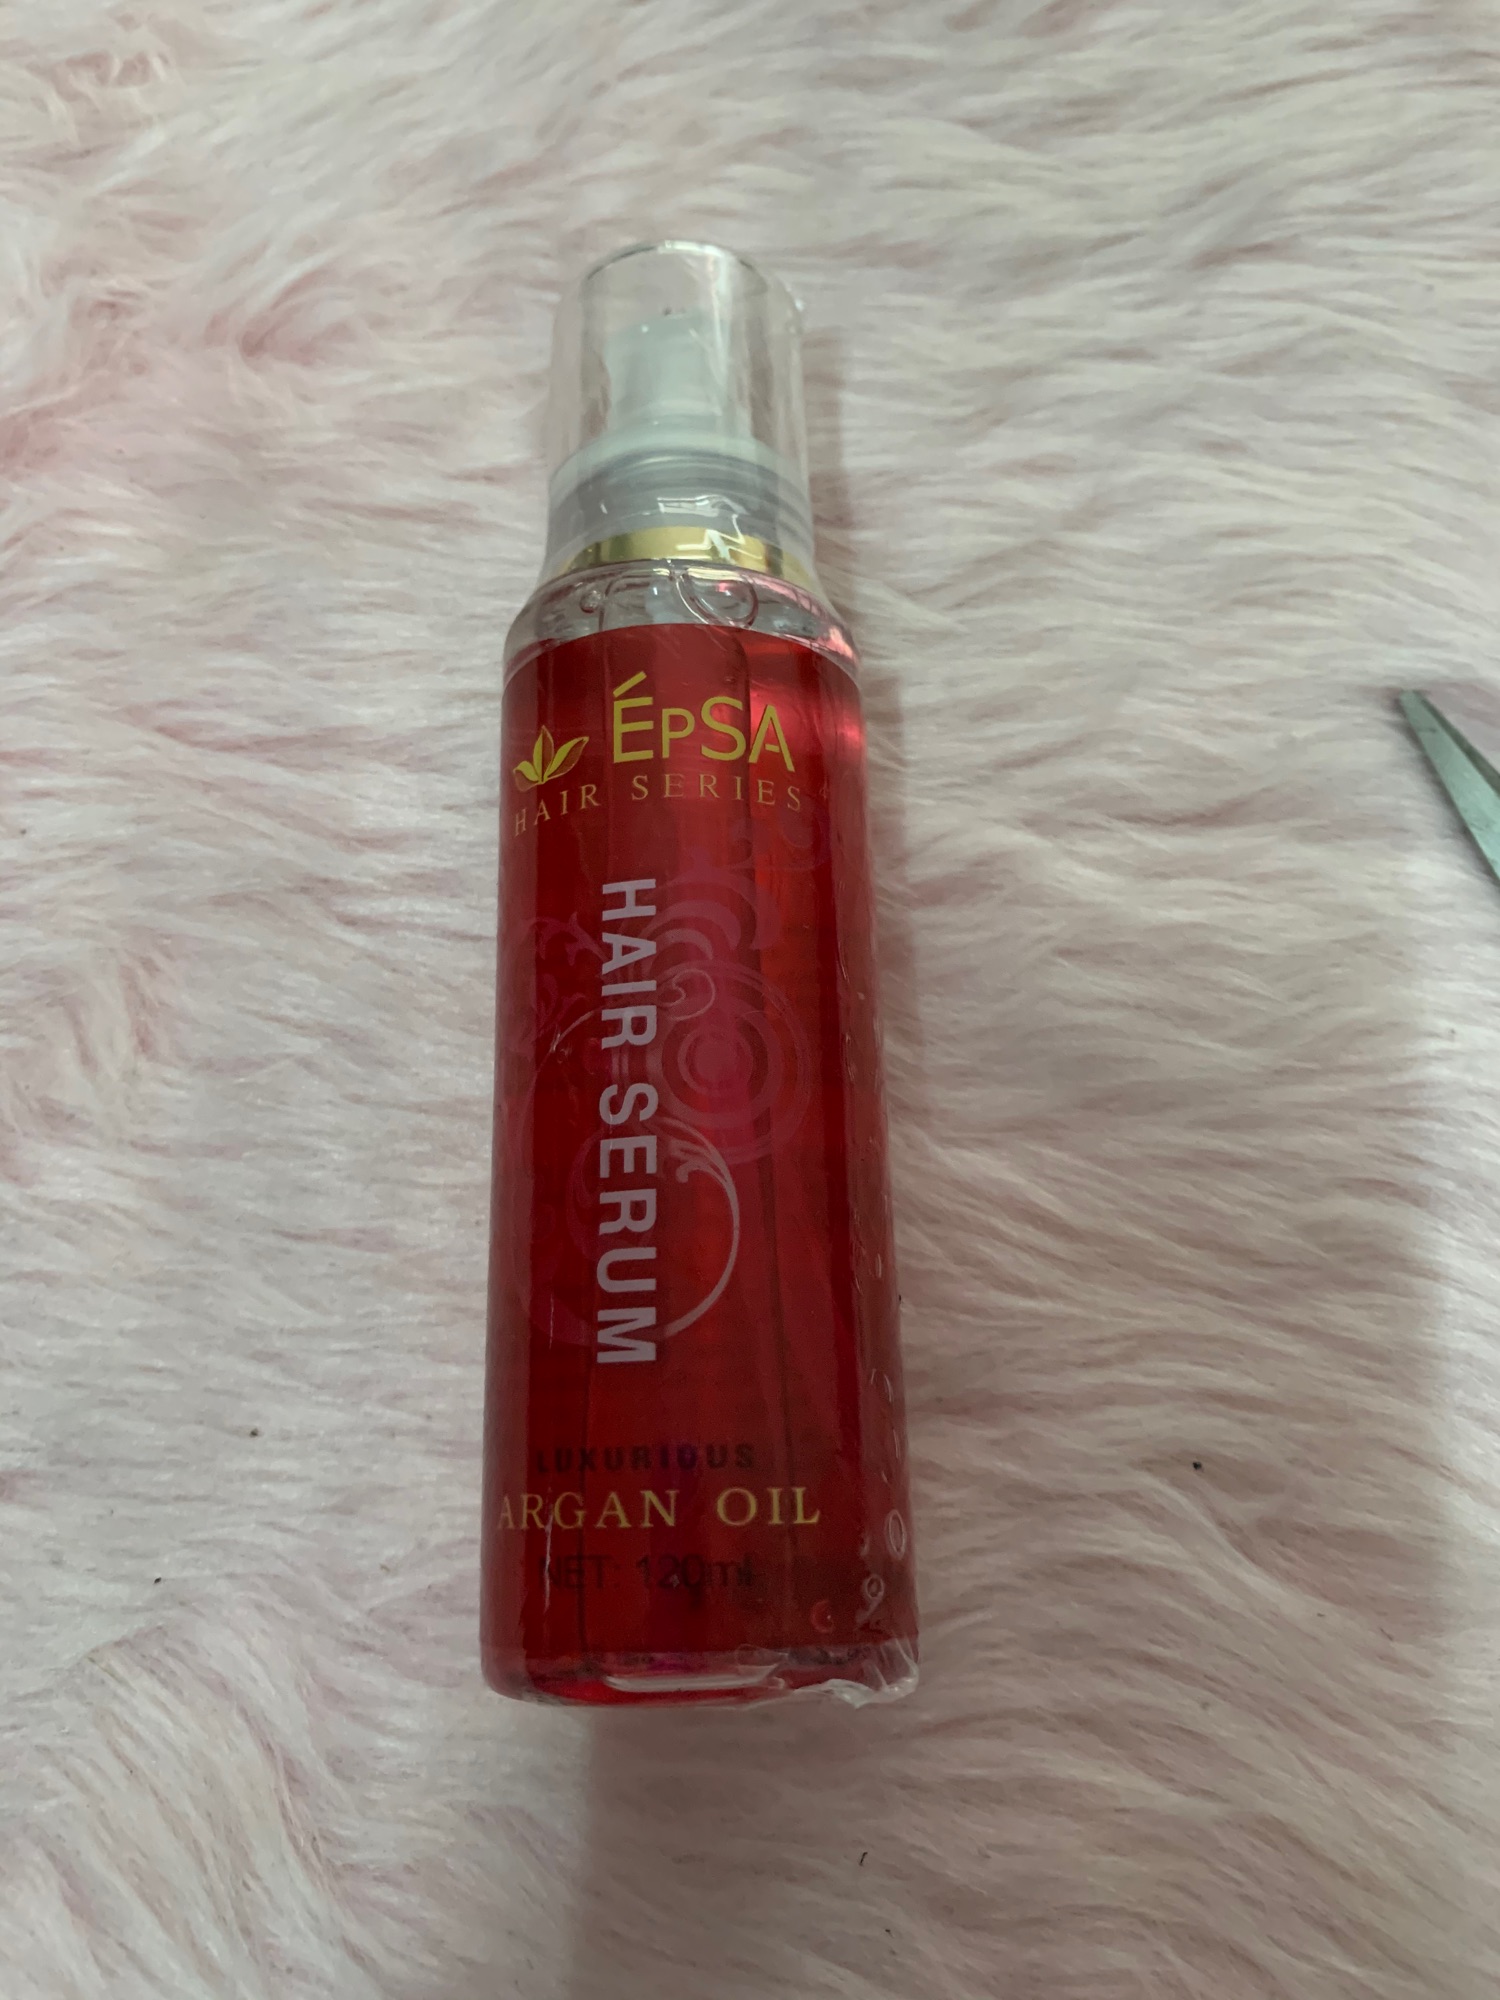 Epsa Hair serum argan oil